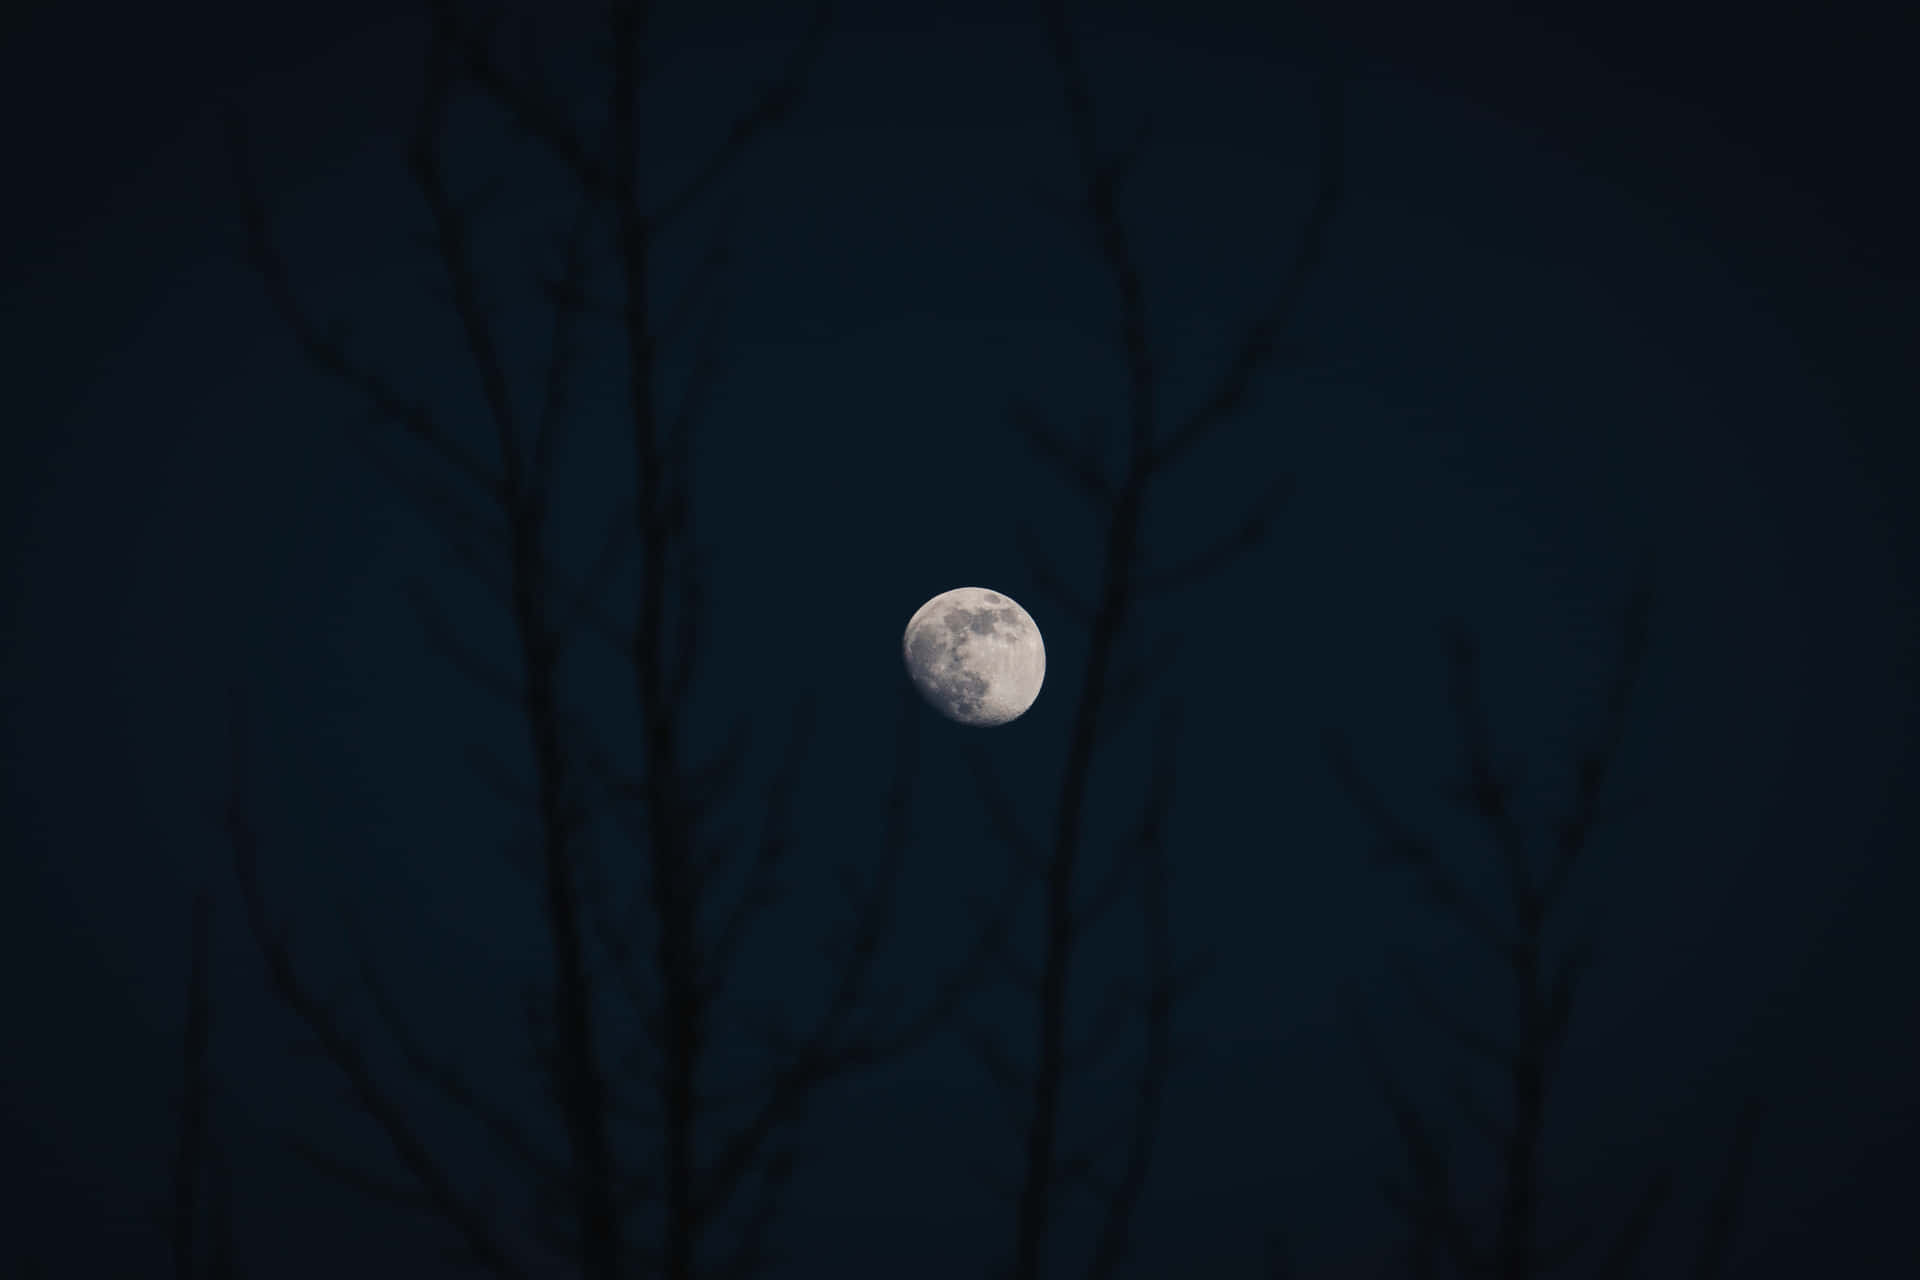 Imagende La Luna Con Árboles Oscuros Y Desolados.